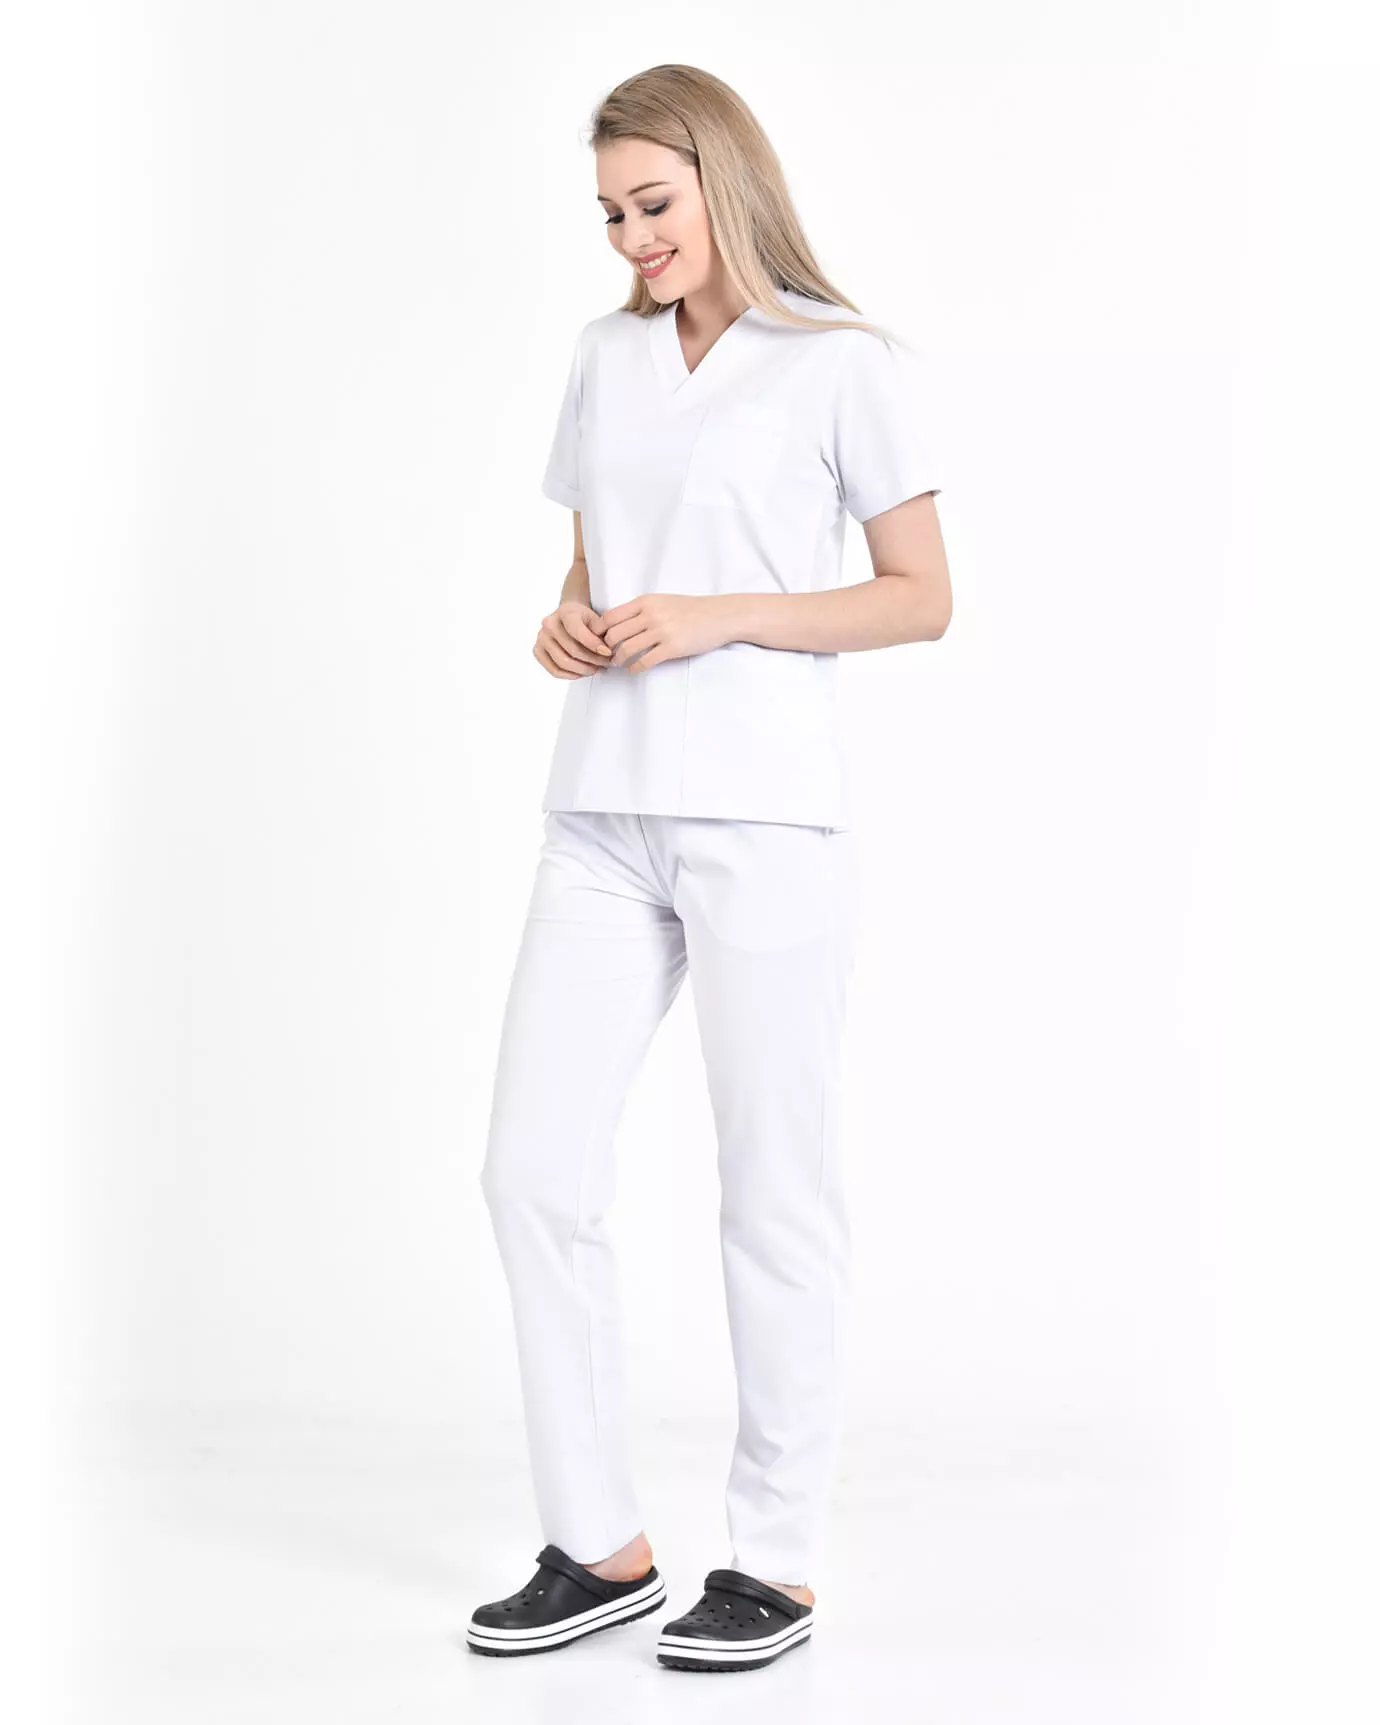 Kadın Hemşire Forması Premium Beyaz Takım Yarasa Kol